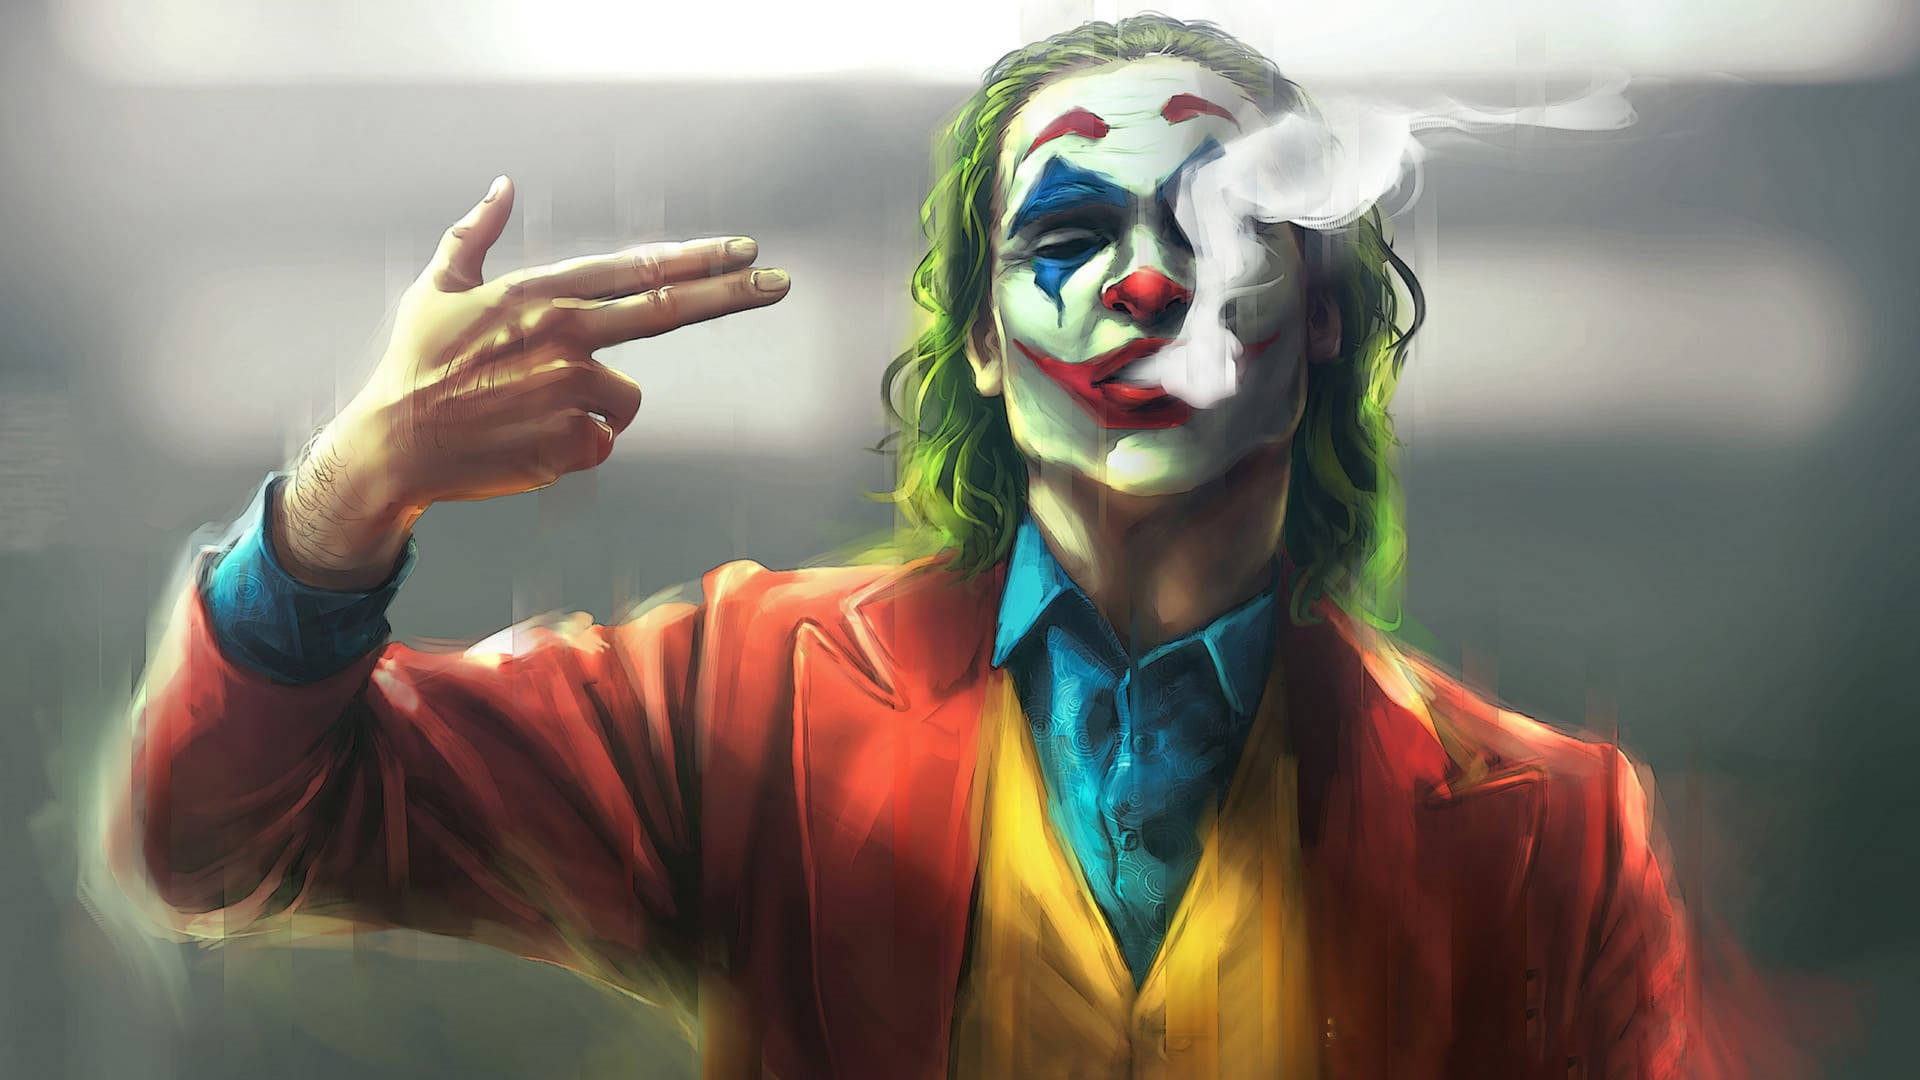 Joker 2019 Smoking Painting Wallpaper